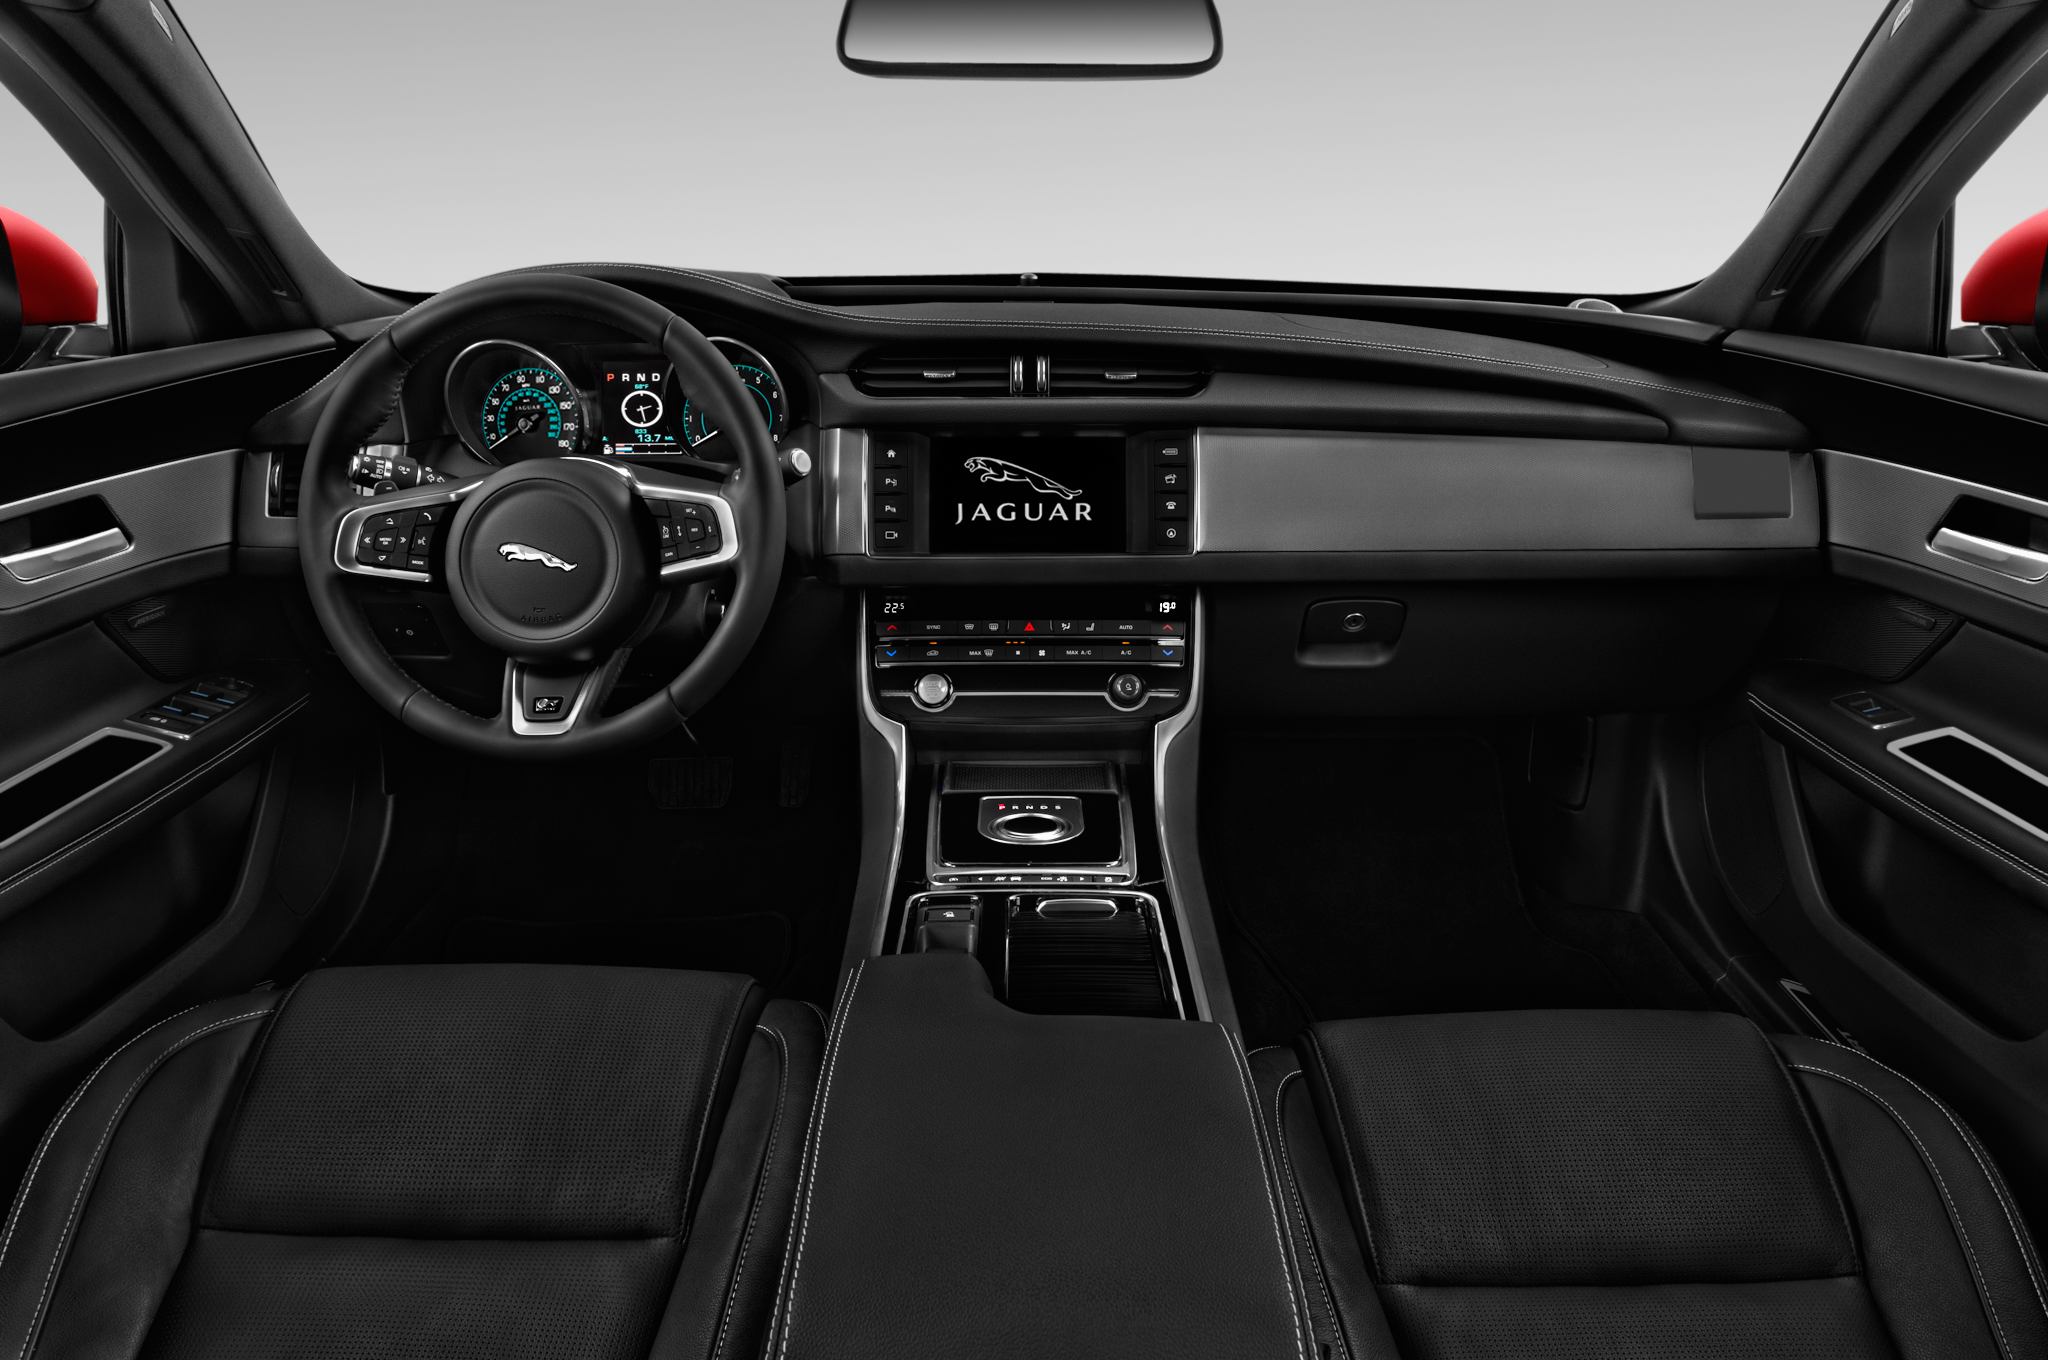 Jaguar XF Backgrounds, Compatible - PC, Mobile, Gadgets| 2048x1360 px